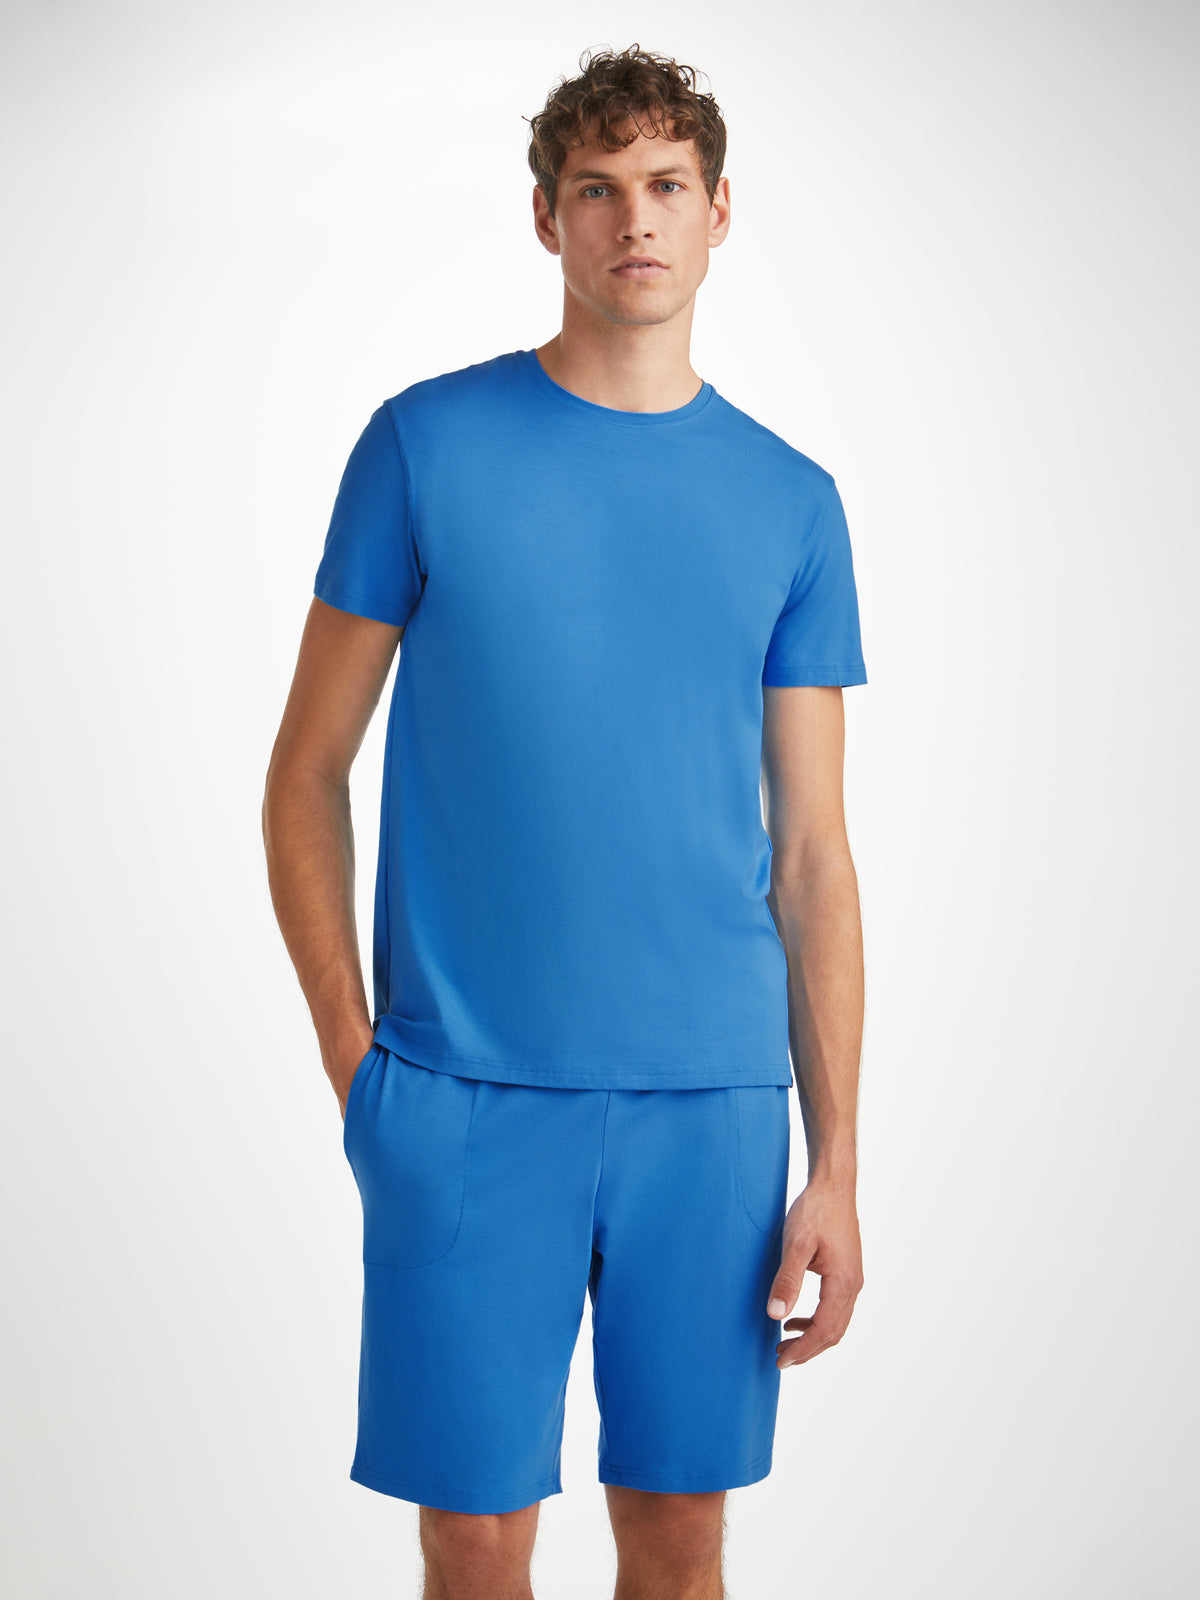 Men's Lounge Shorts Basel Micro Modal Stretch Azure Blue